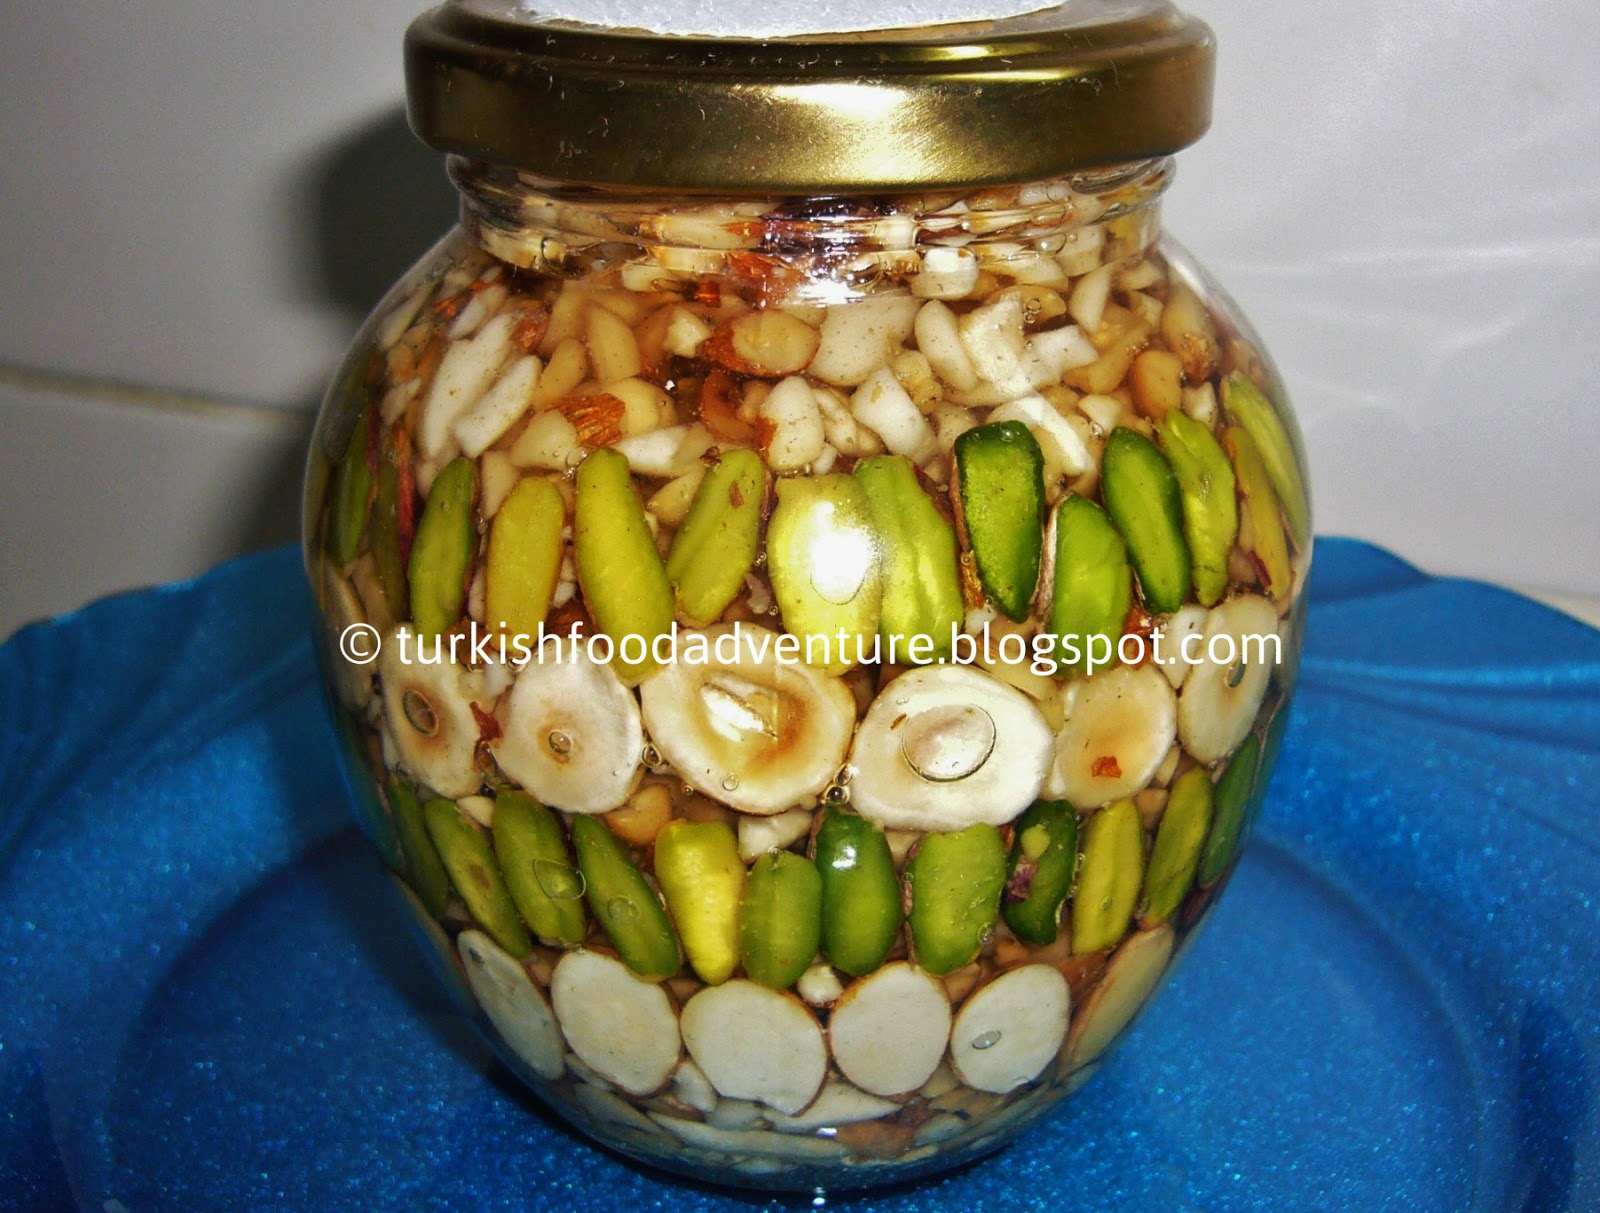 Turkish Food Adventure: Ballı Çerez - Turkish honey appetizer in a jar